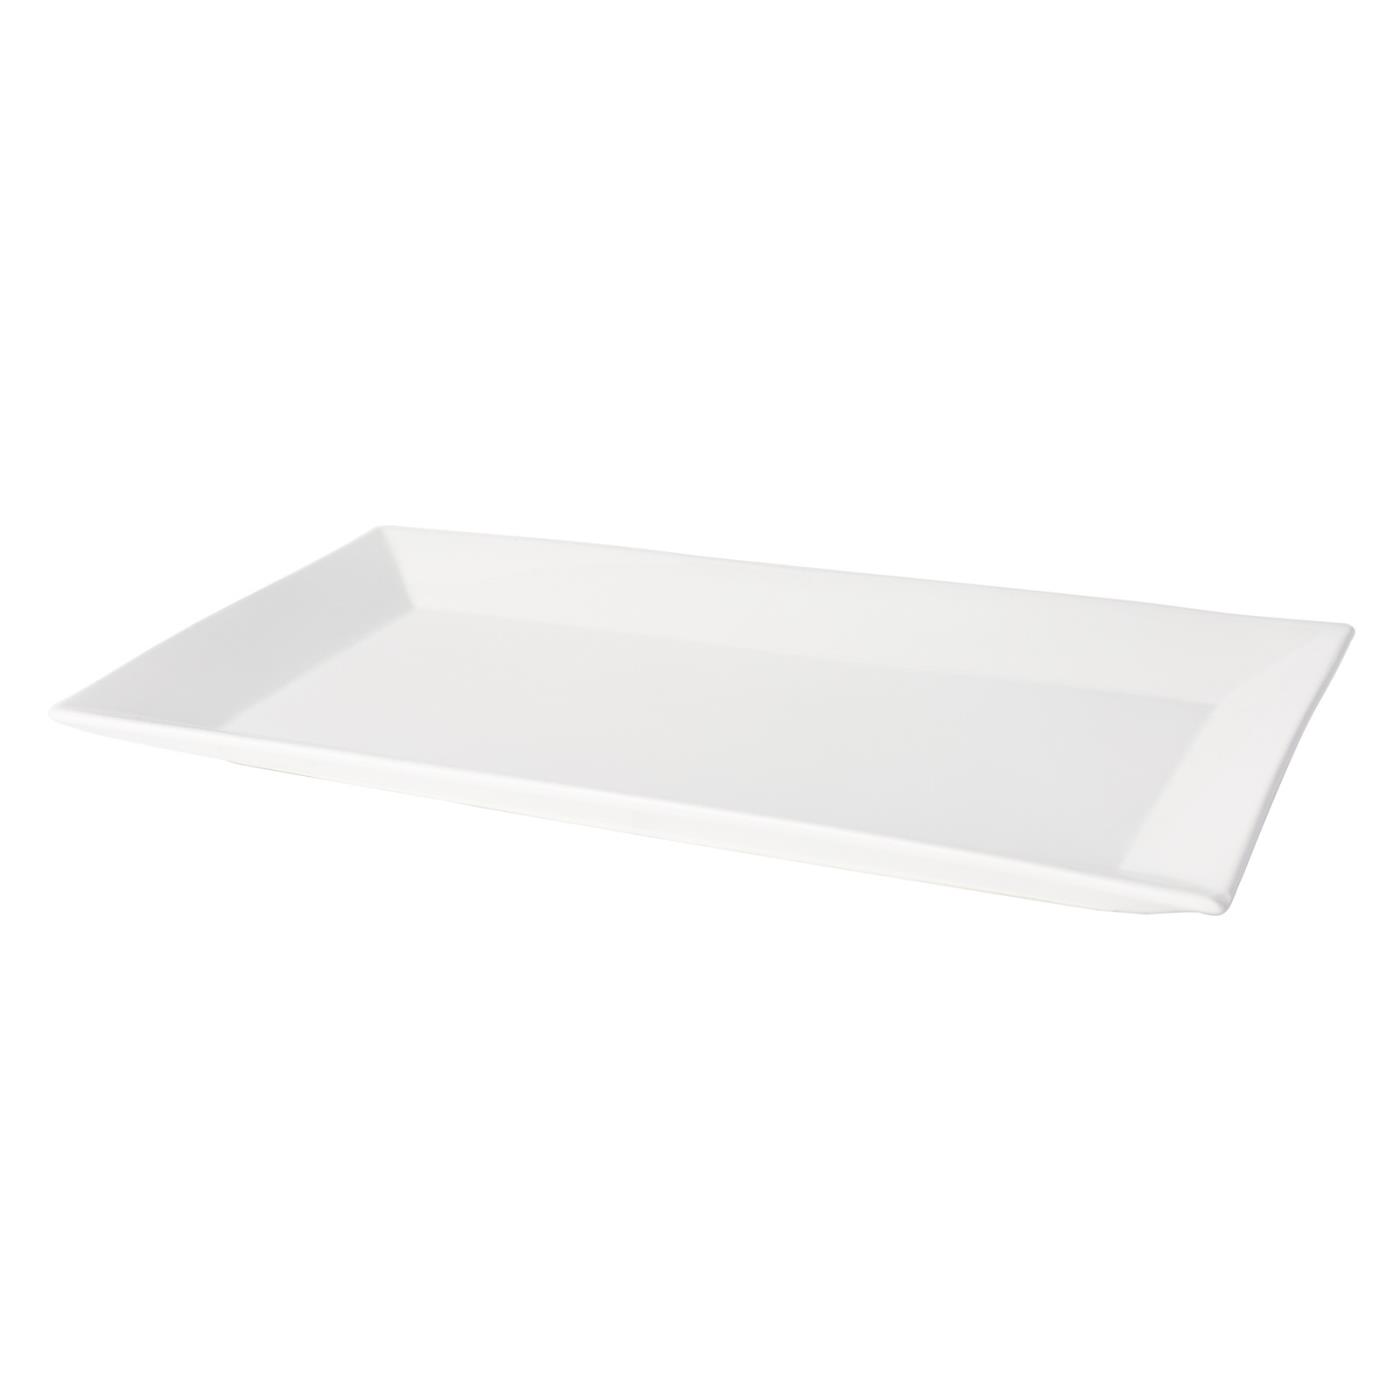 White Ceramic Rectangular Platter - 18" x 10"